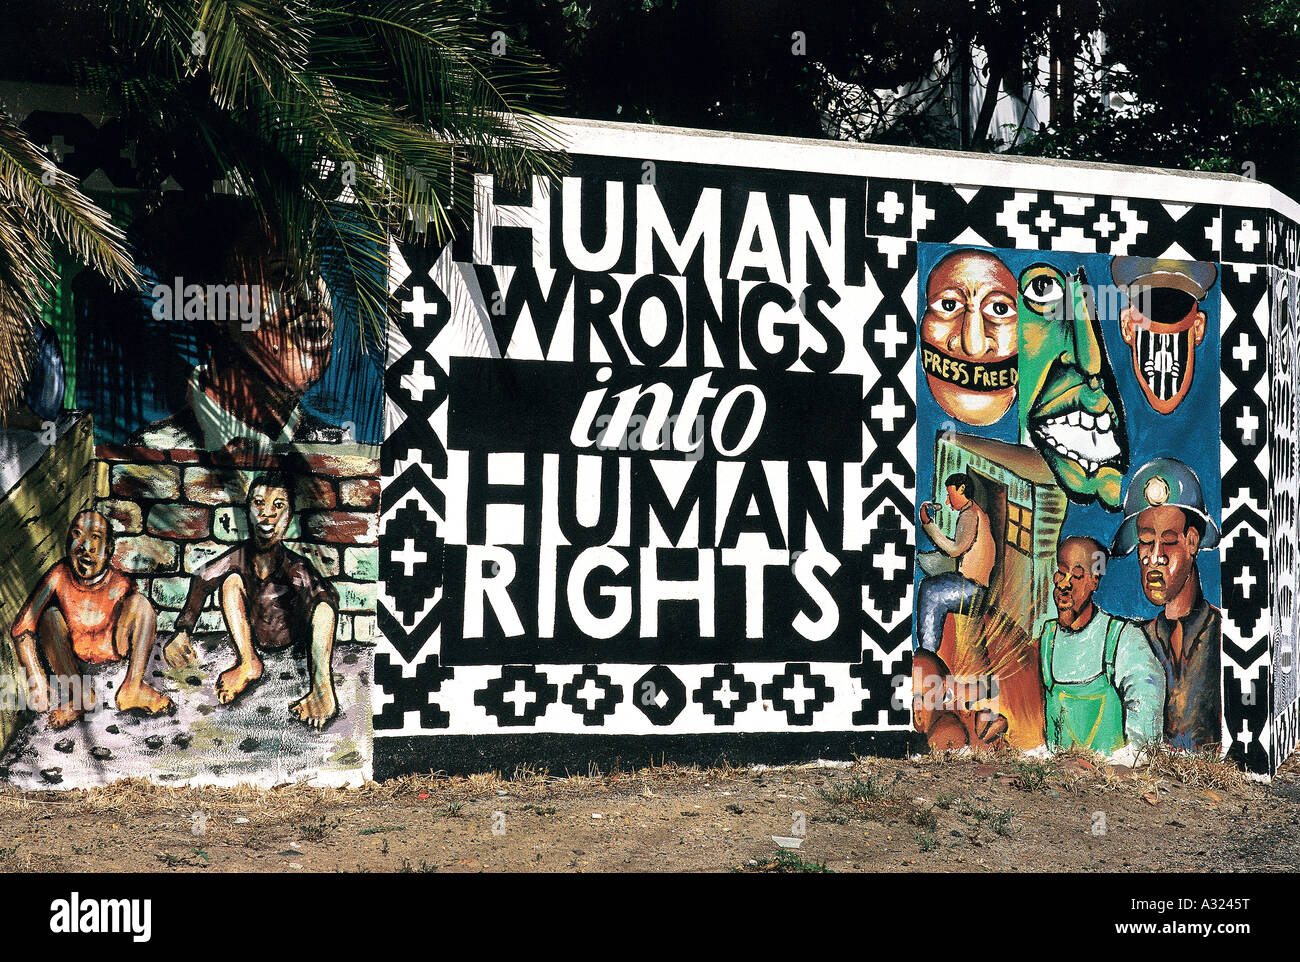 Les torts dans les droits de l'Homme, photo murale, Cape Town, Afrique du Sud Banque D'Images